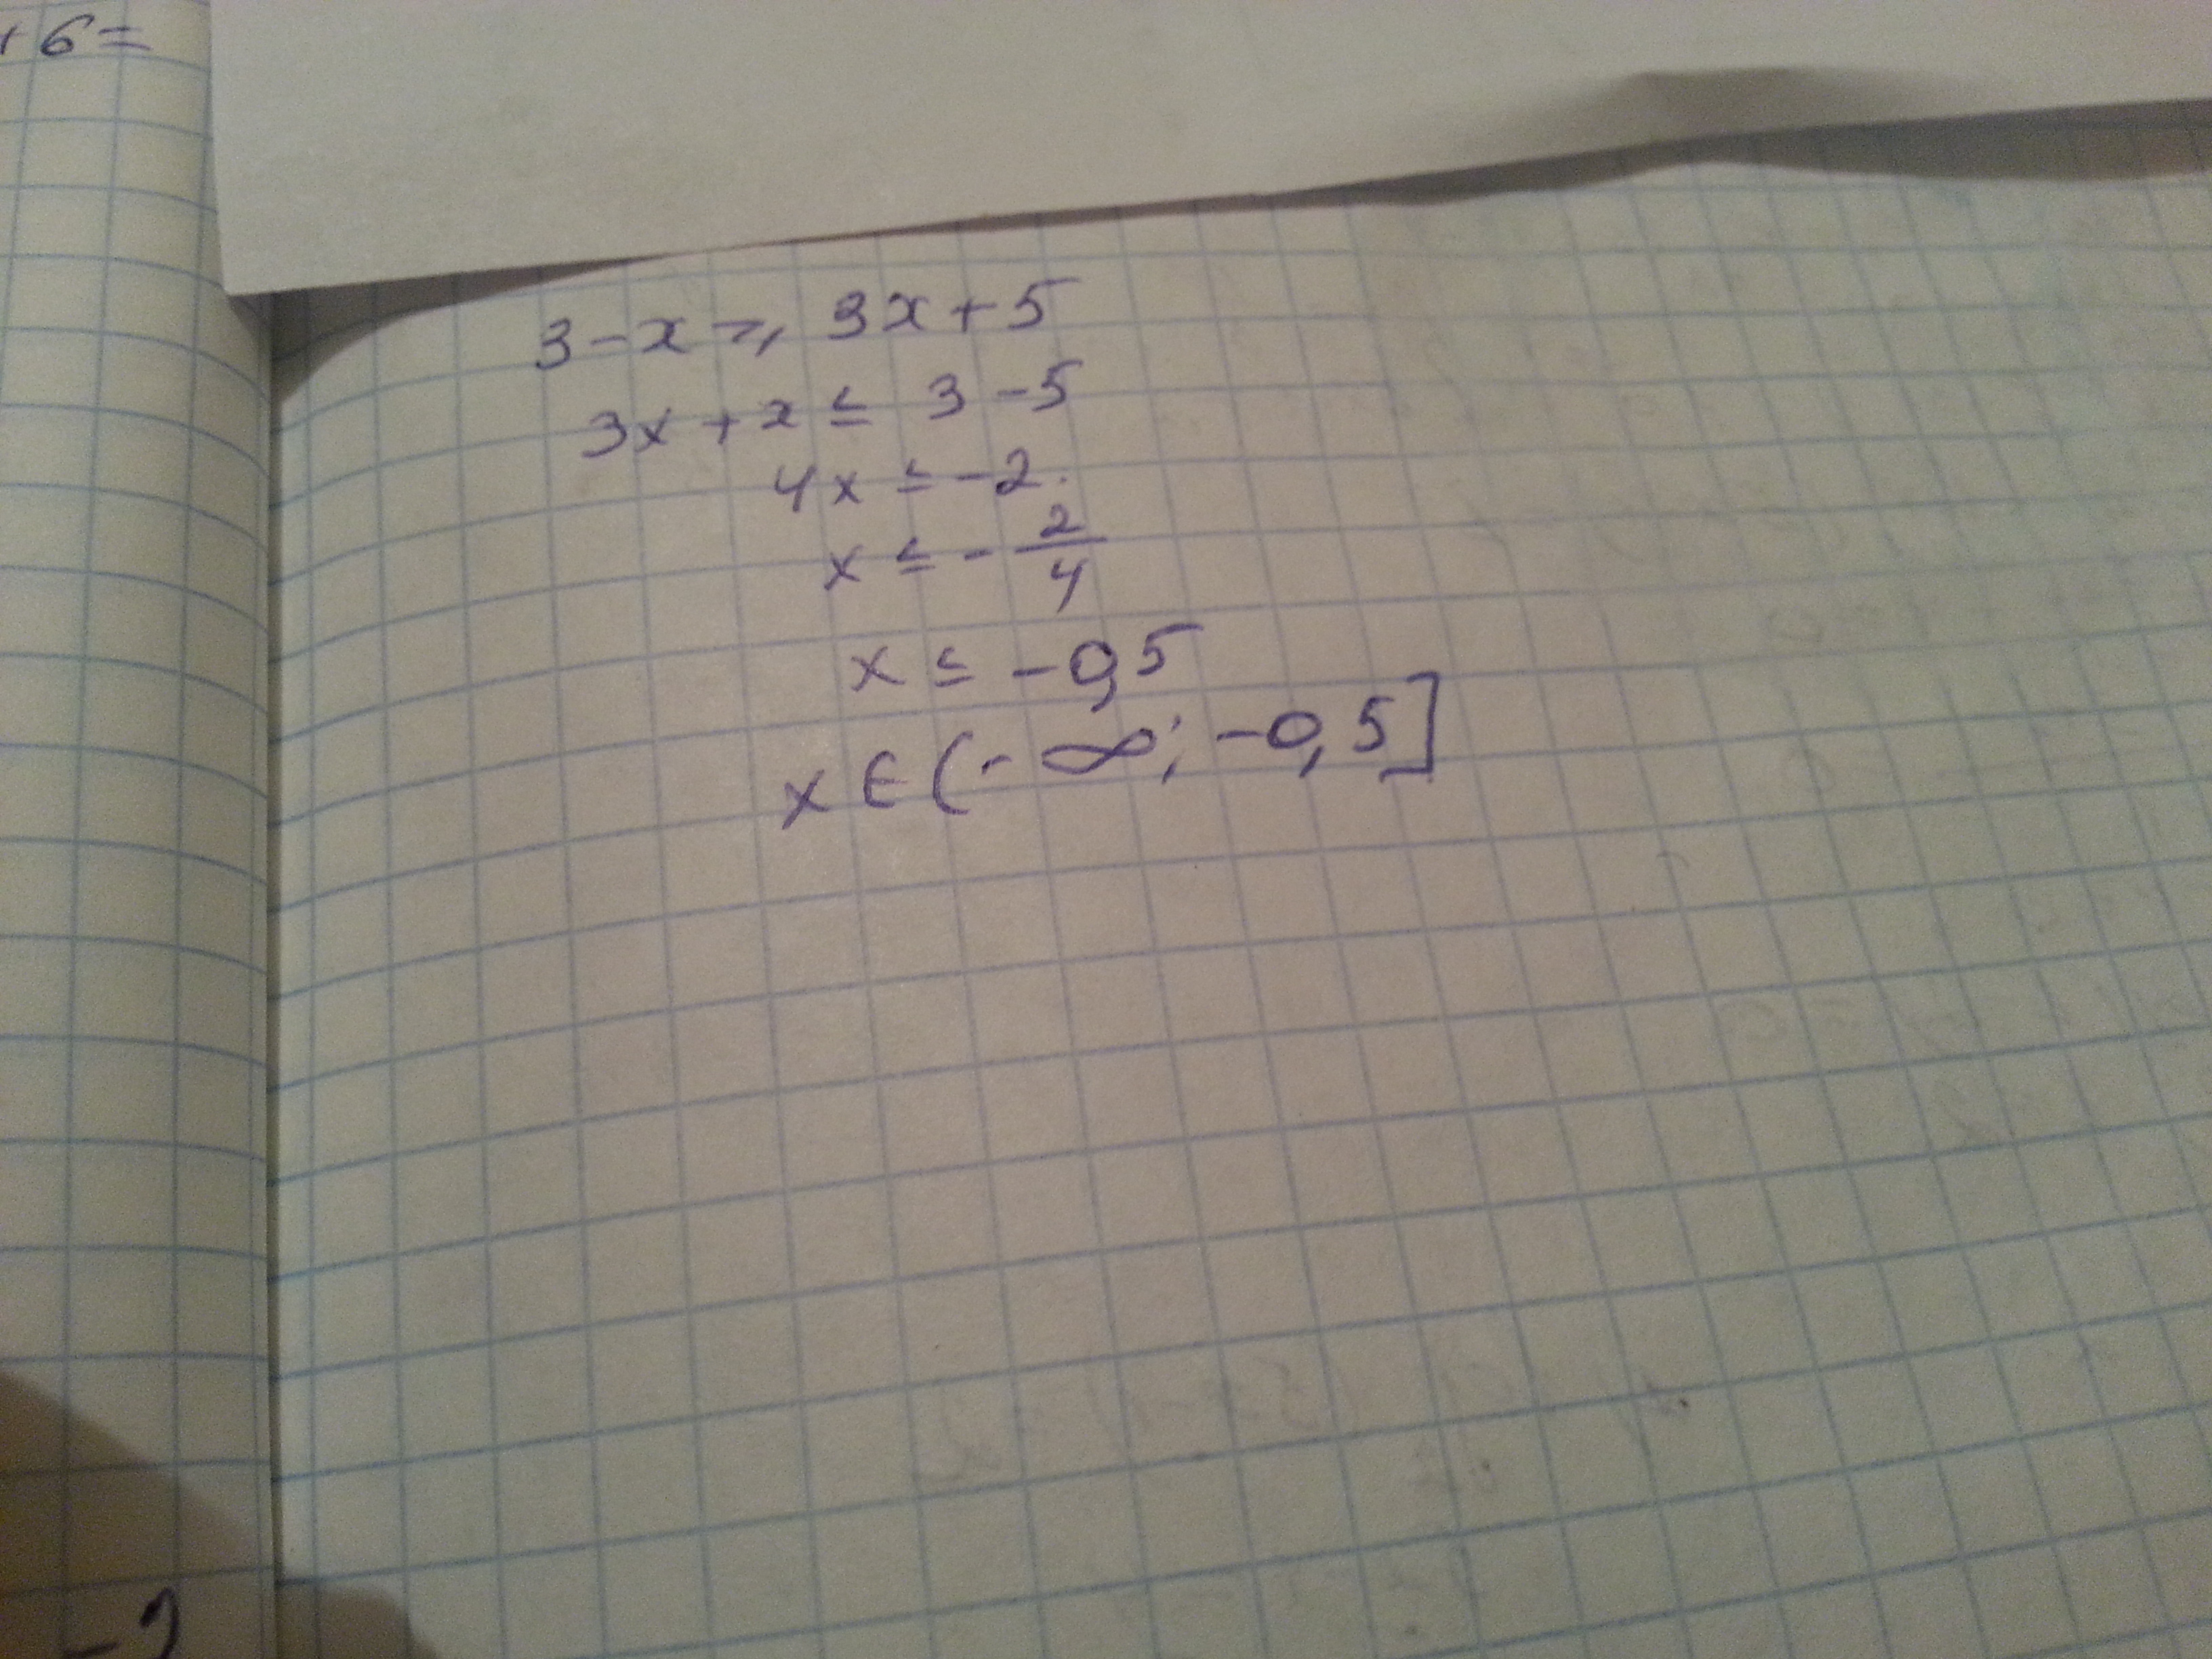 3х 5 х 5 равно 1 х. 3x-(x-3)<=5x. Укажите решение неравенства -3-5x< x+3. 3-X 3x+5 решение неравенства. 3-X>3x+5 укажите решение.